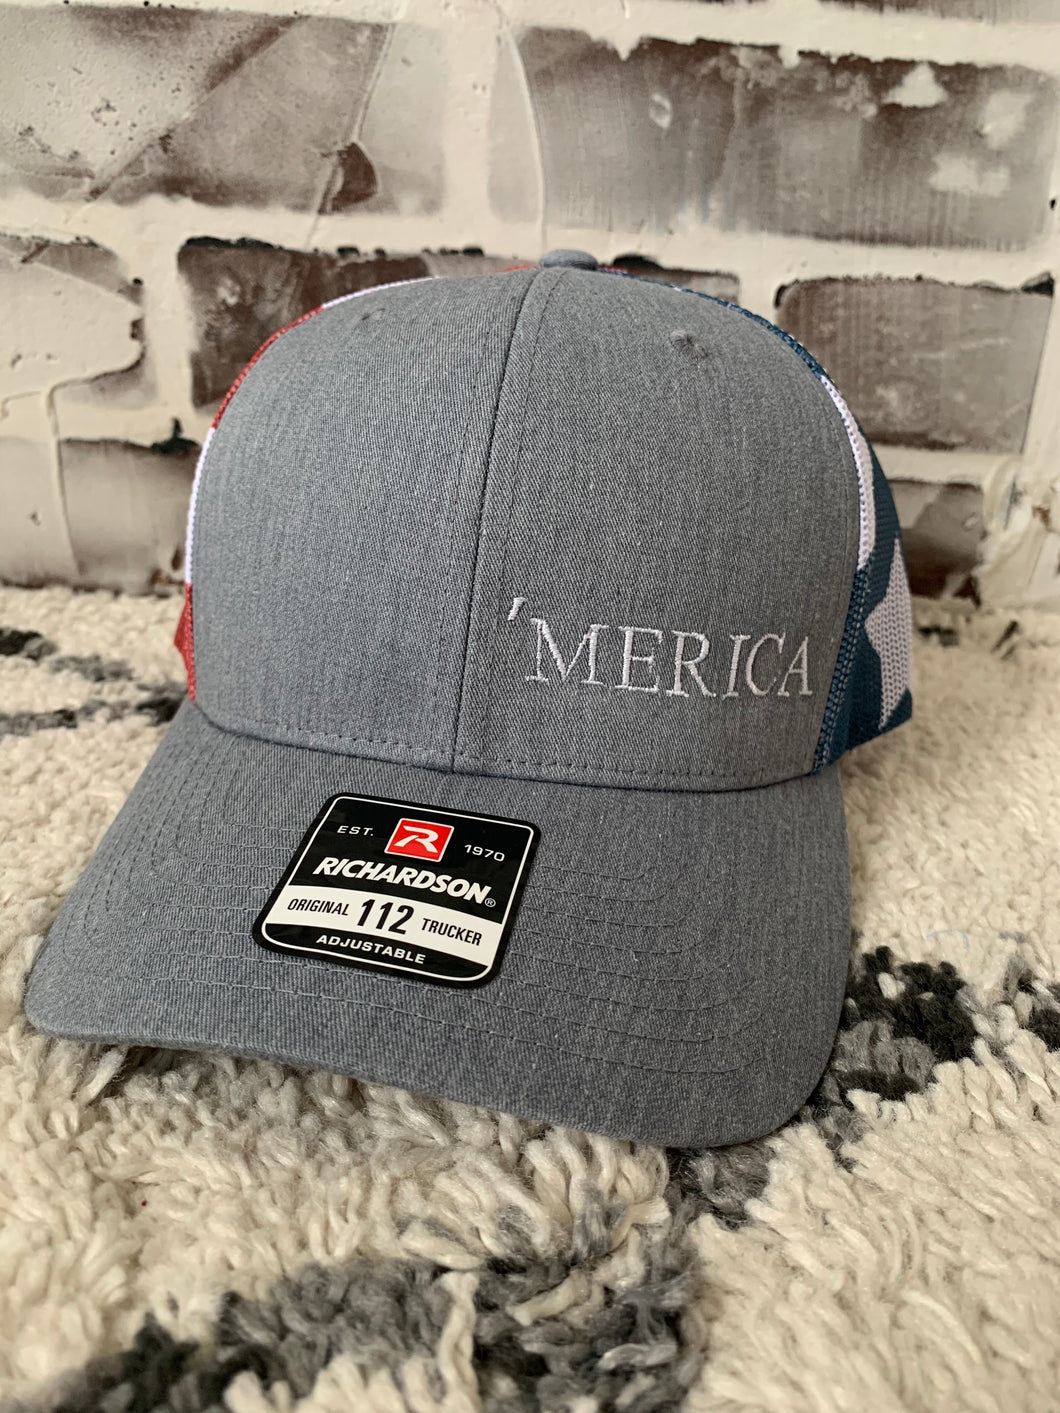 'Merica Hat